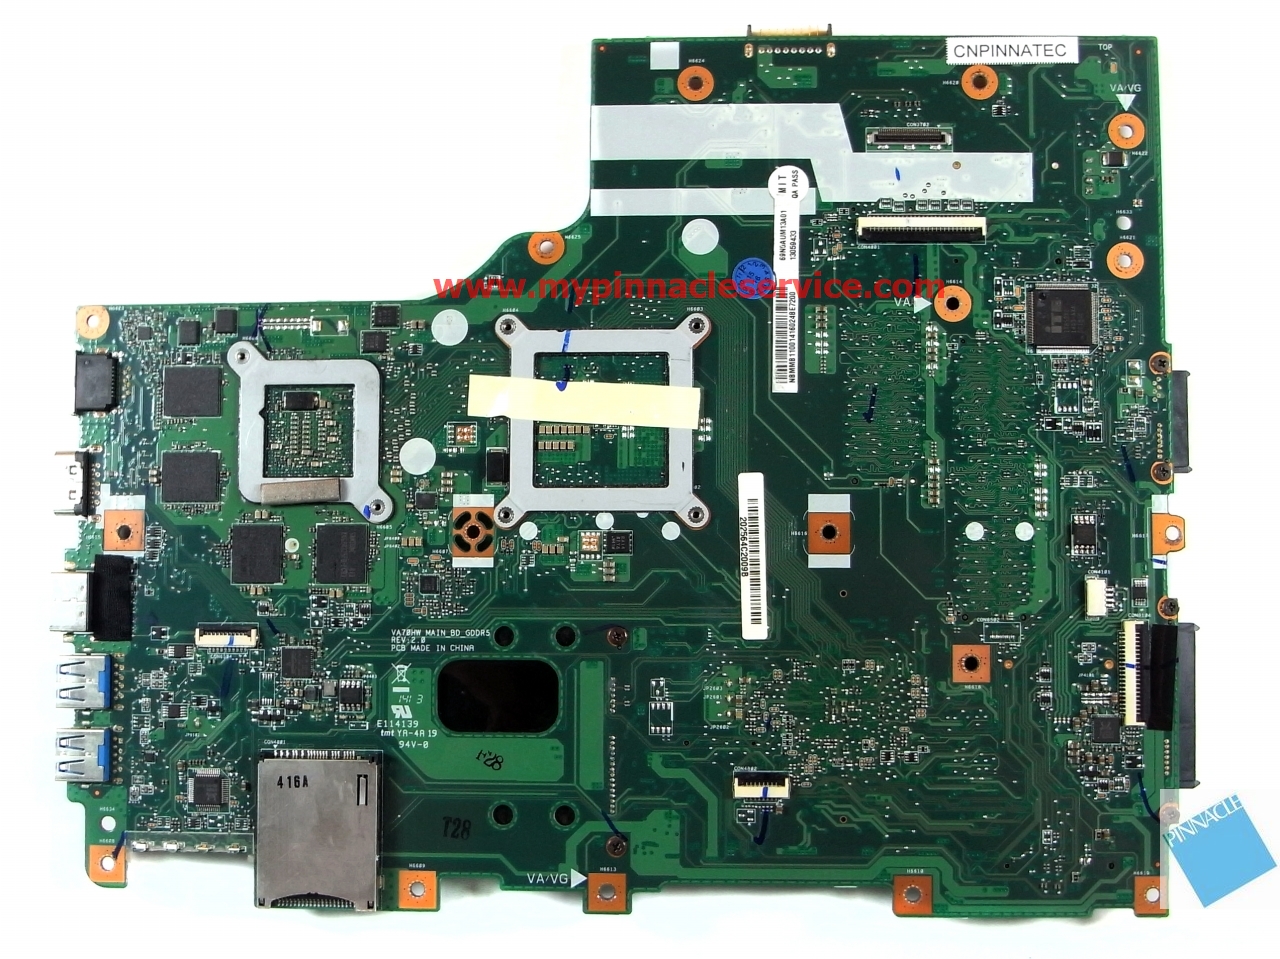 NBMMB11001 Motherboard For Acer aspire V3-772 V3-772G VA70HW GT850M